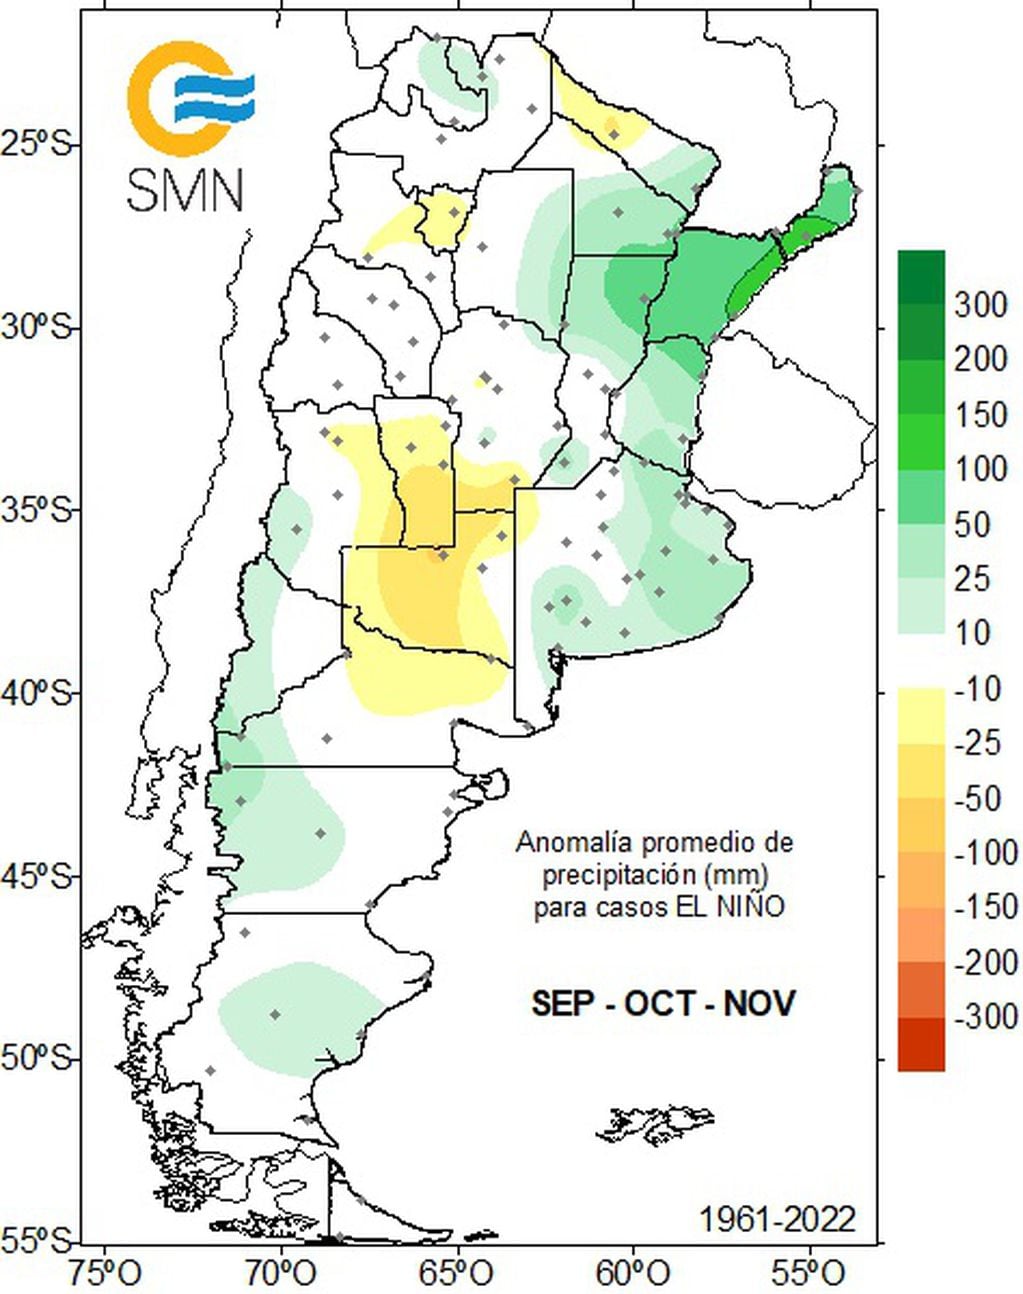 Llegó El Niño: pronóstico de precipitaciones entre septiembre y noviembre de 2023 (SMN)